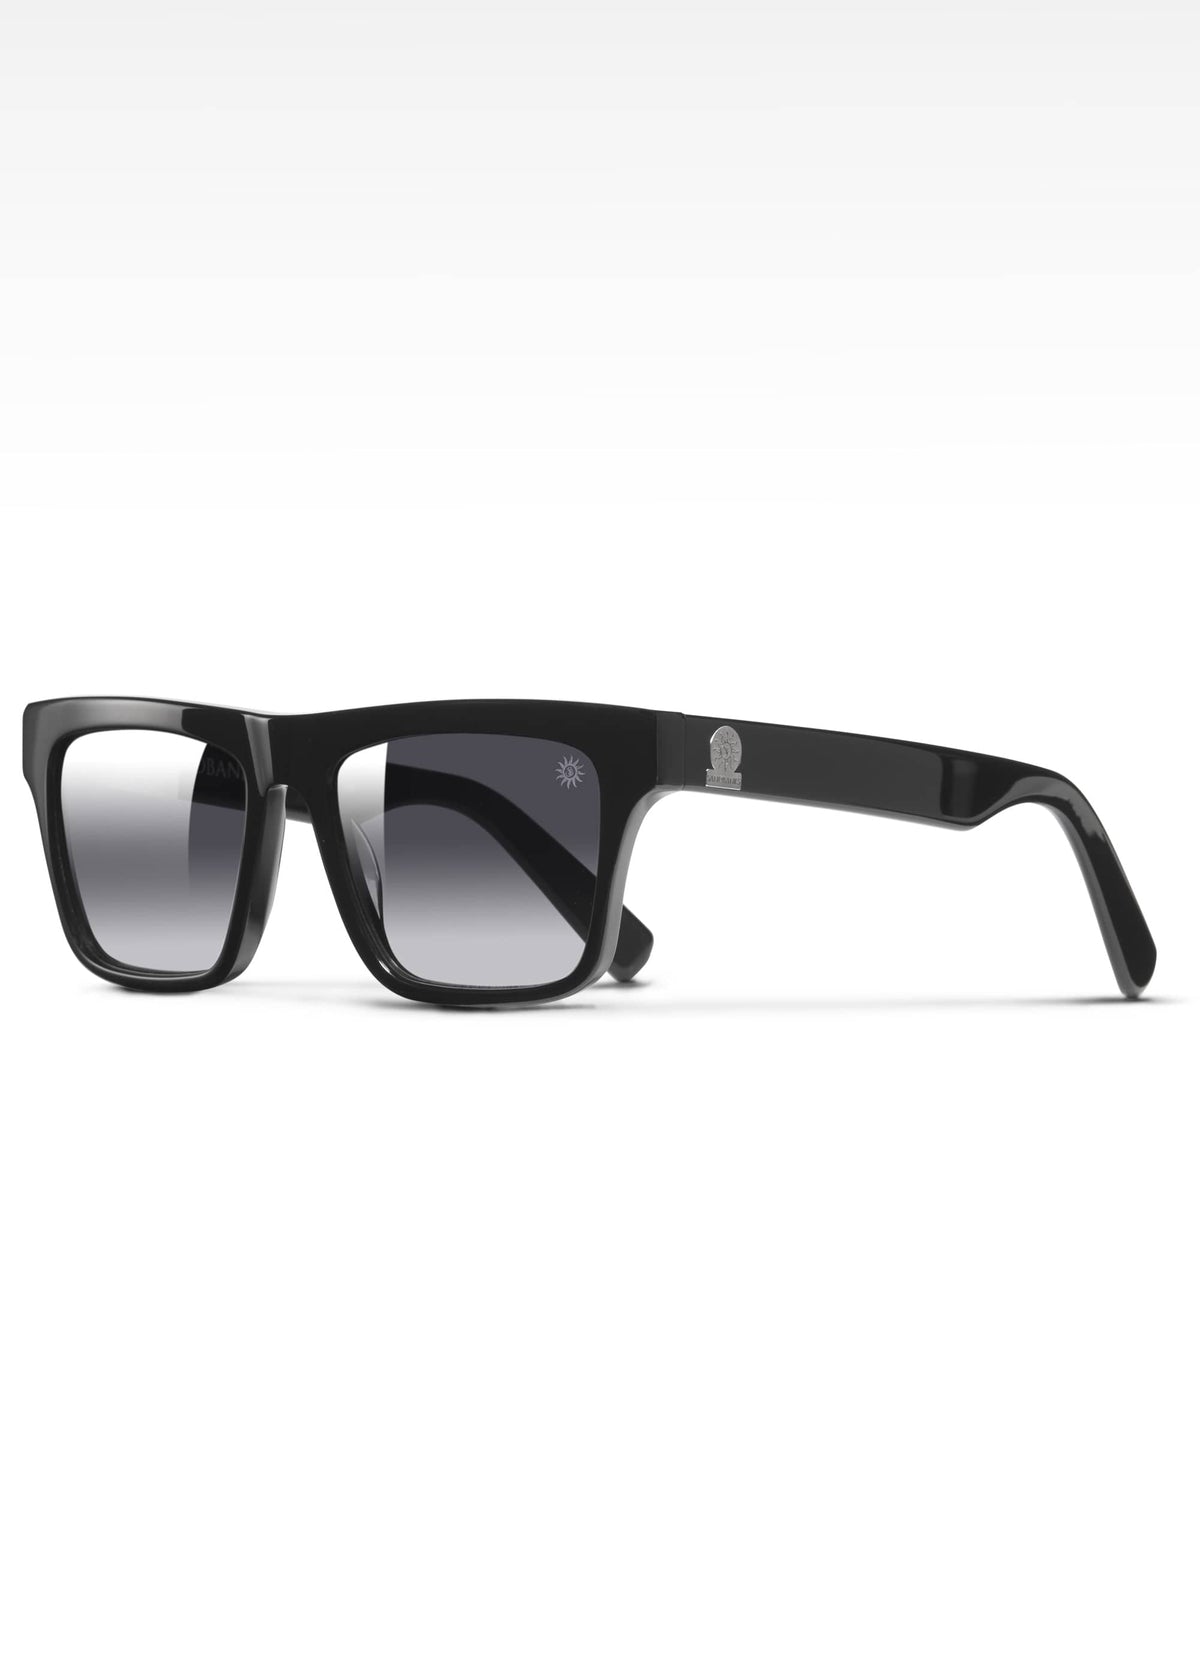 Sandbanks Monaco Sunglasses - Noir